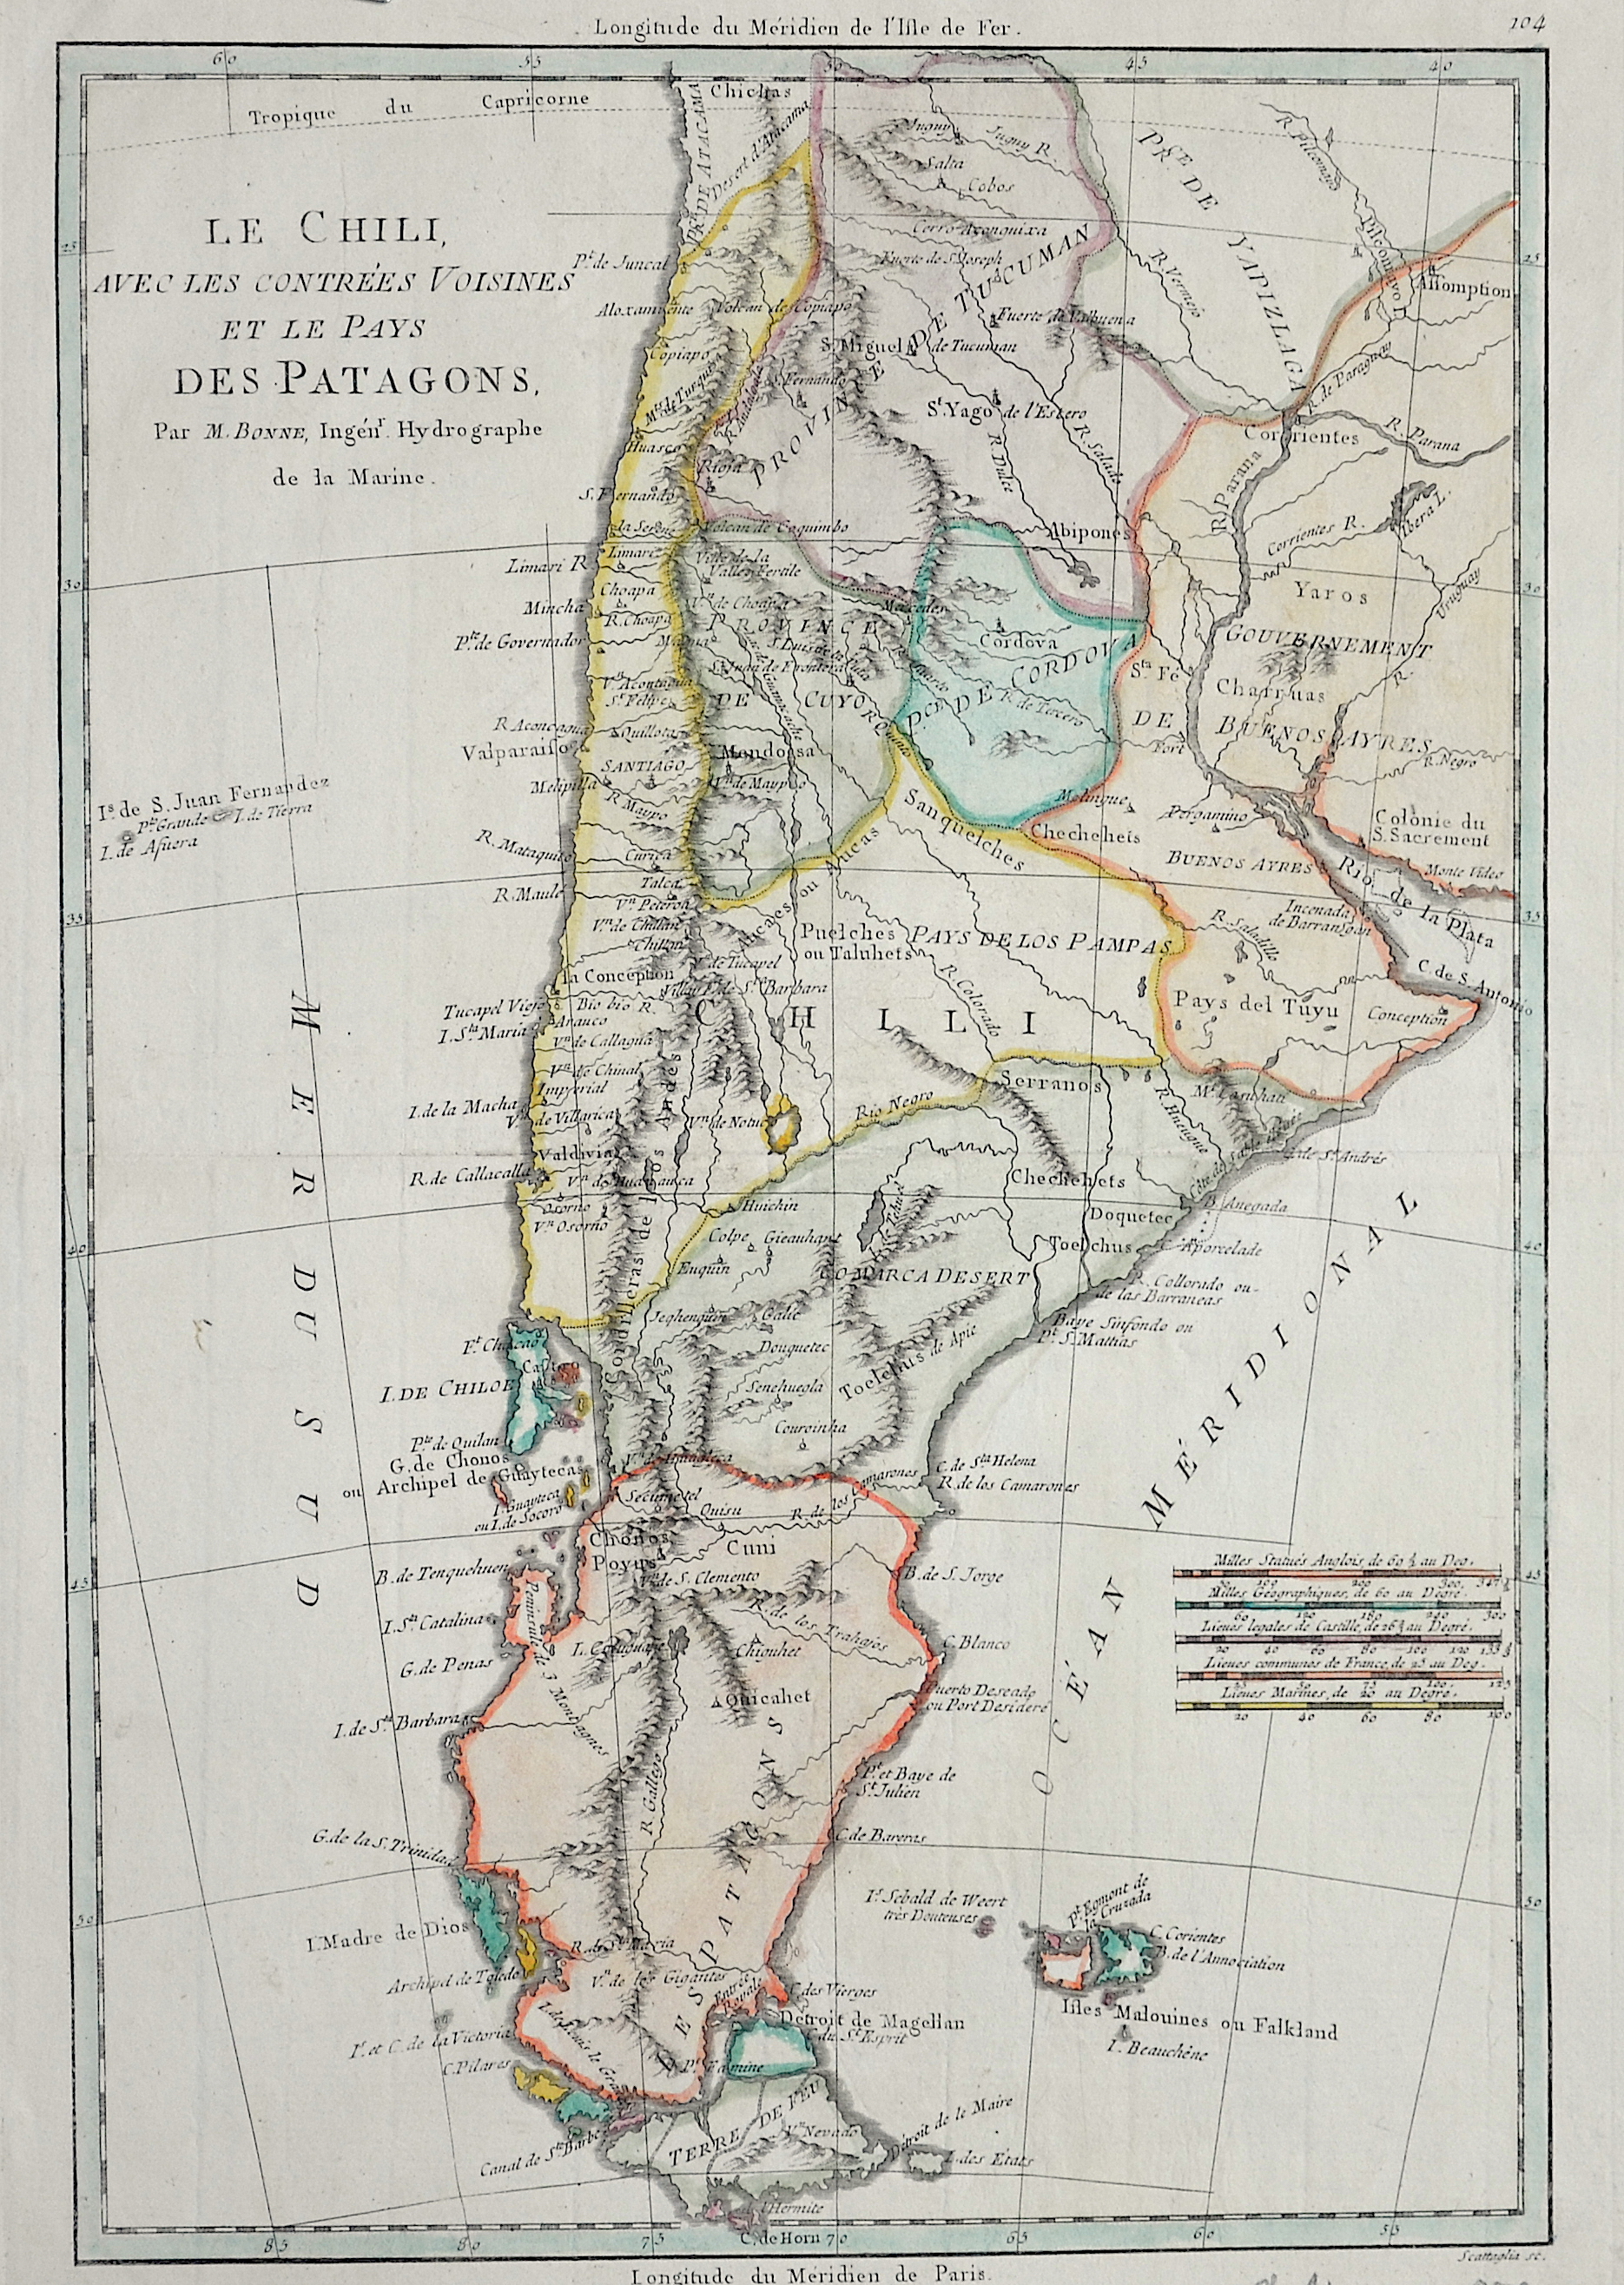 Bonne Rigobert Le Chili, avec les contrées Voisines et le Pays des Patagons.